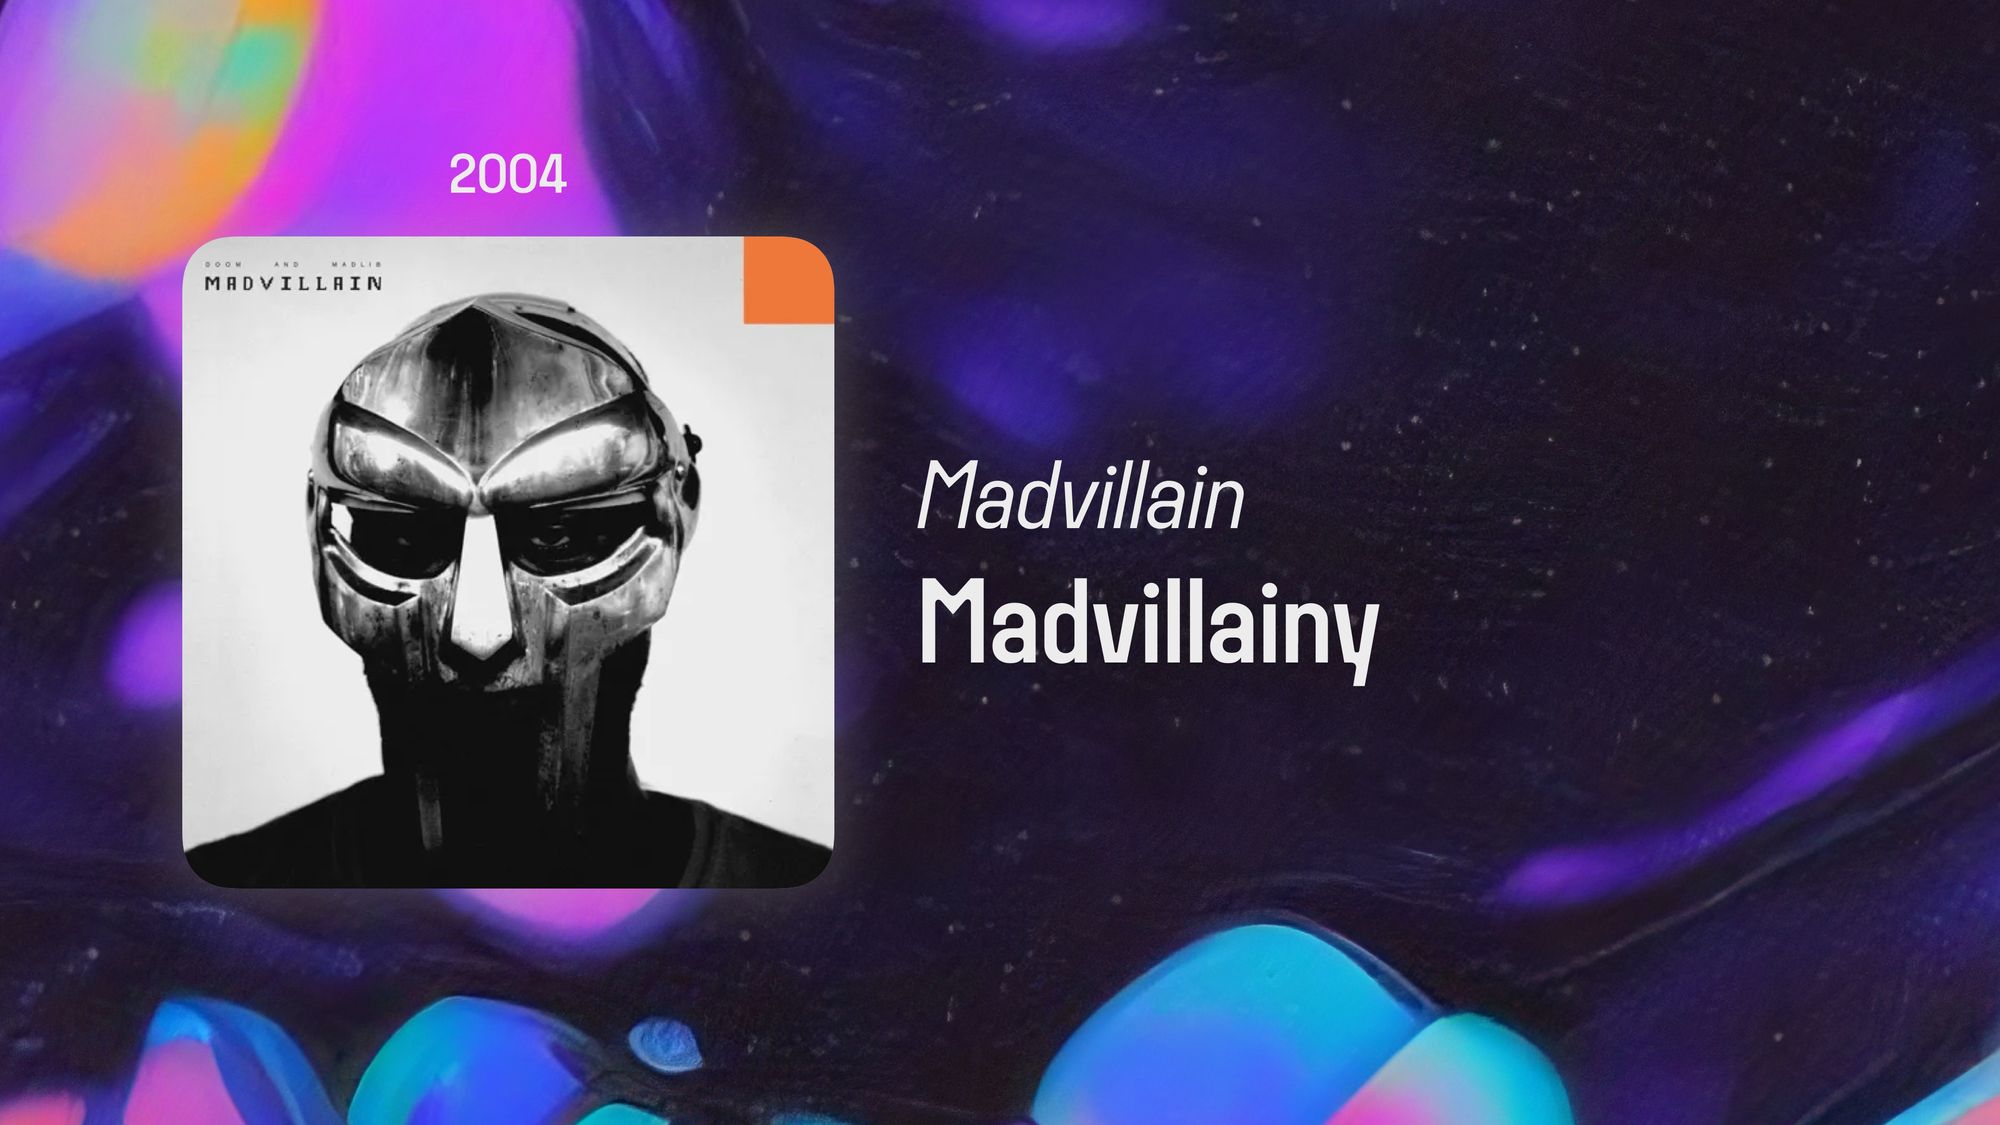 Madvillain Madvillainy 2xLP Vinyl  Album cover art Rap album covers  Album covers